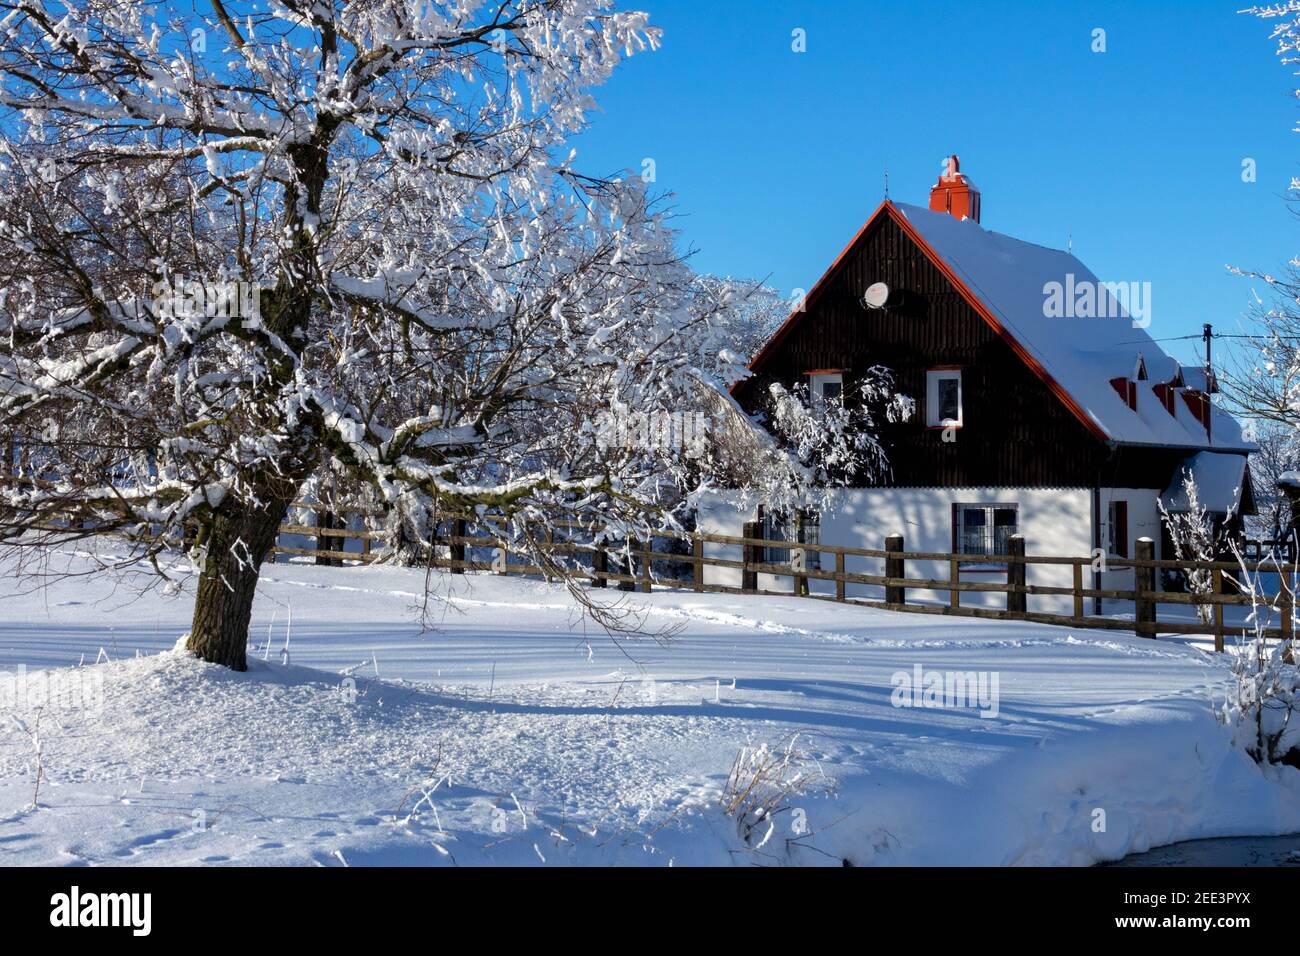 Maison rurale dans un paysage enneigé République tchèque hiver Banque D'Images